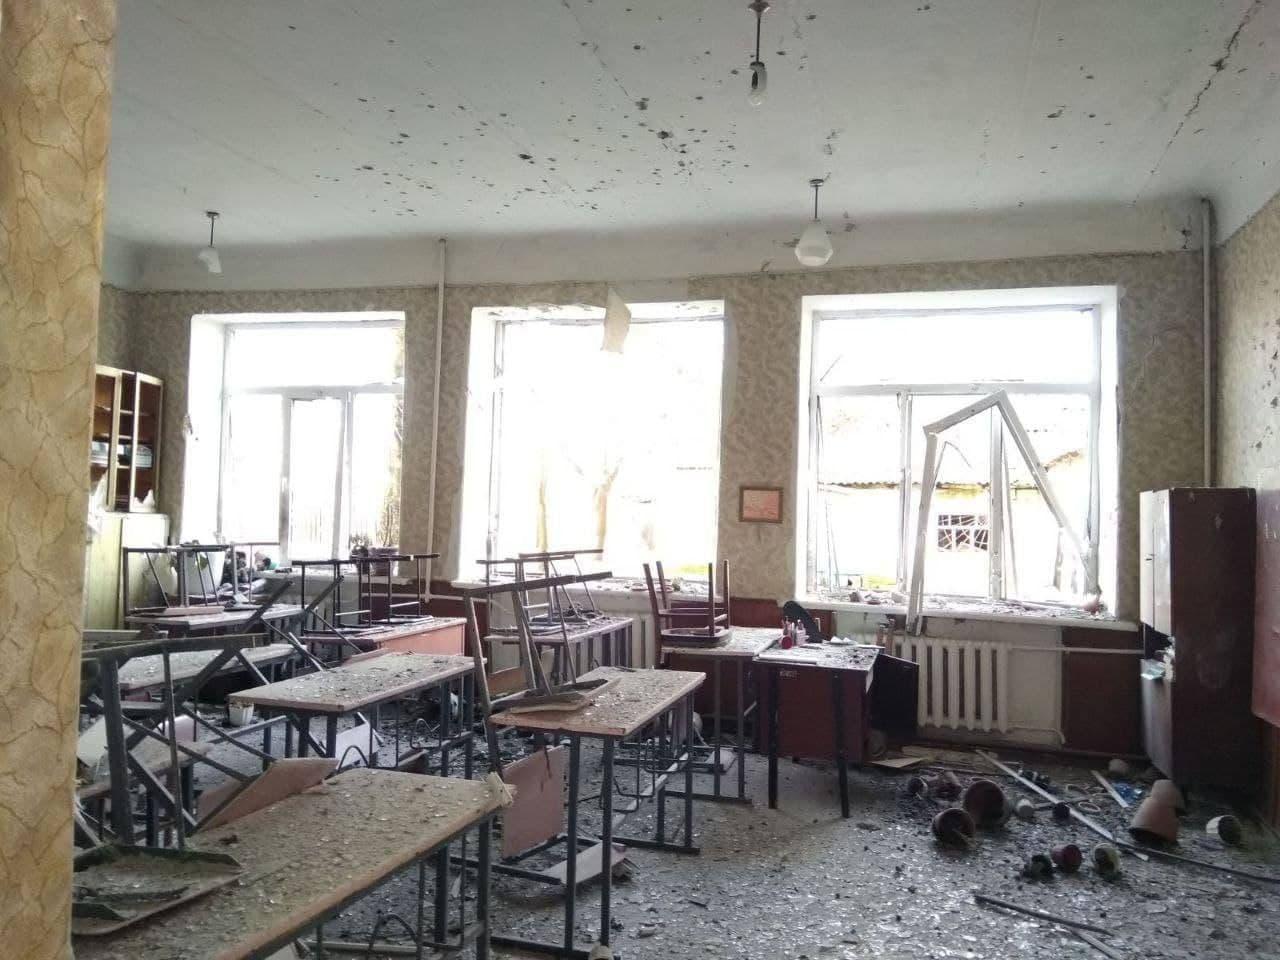 РосЗМІ повідомили про нібито обстріл двох шкіл в окупованому Донецьку